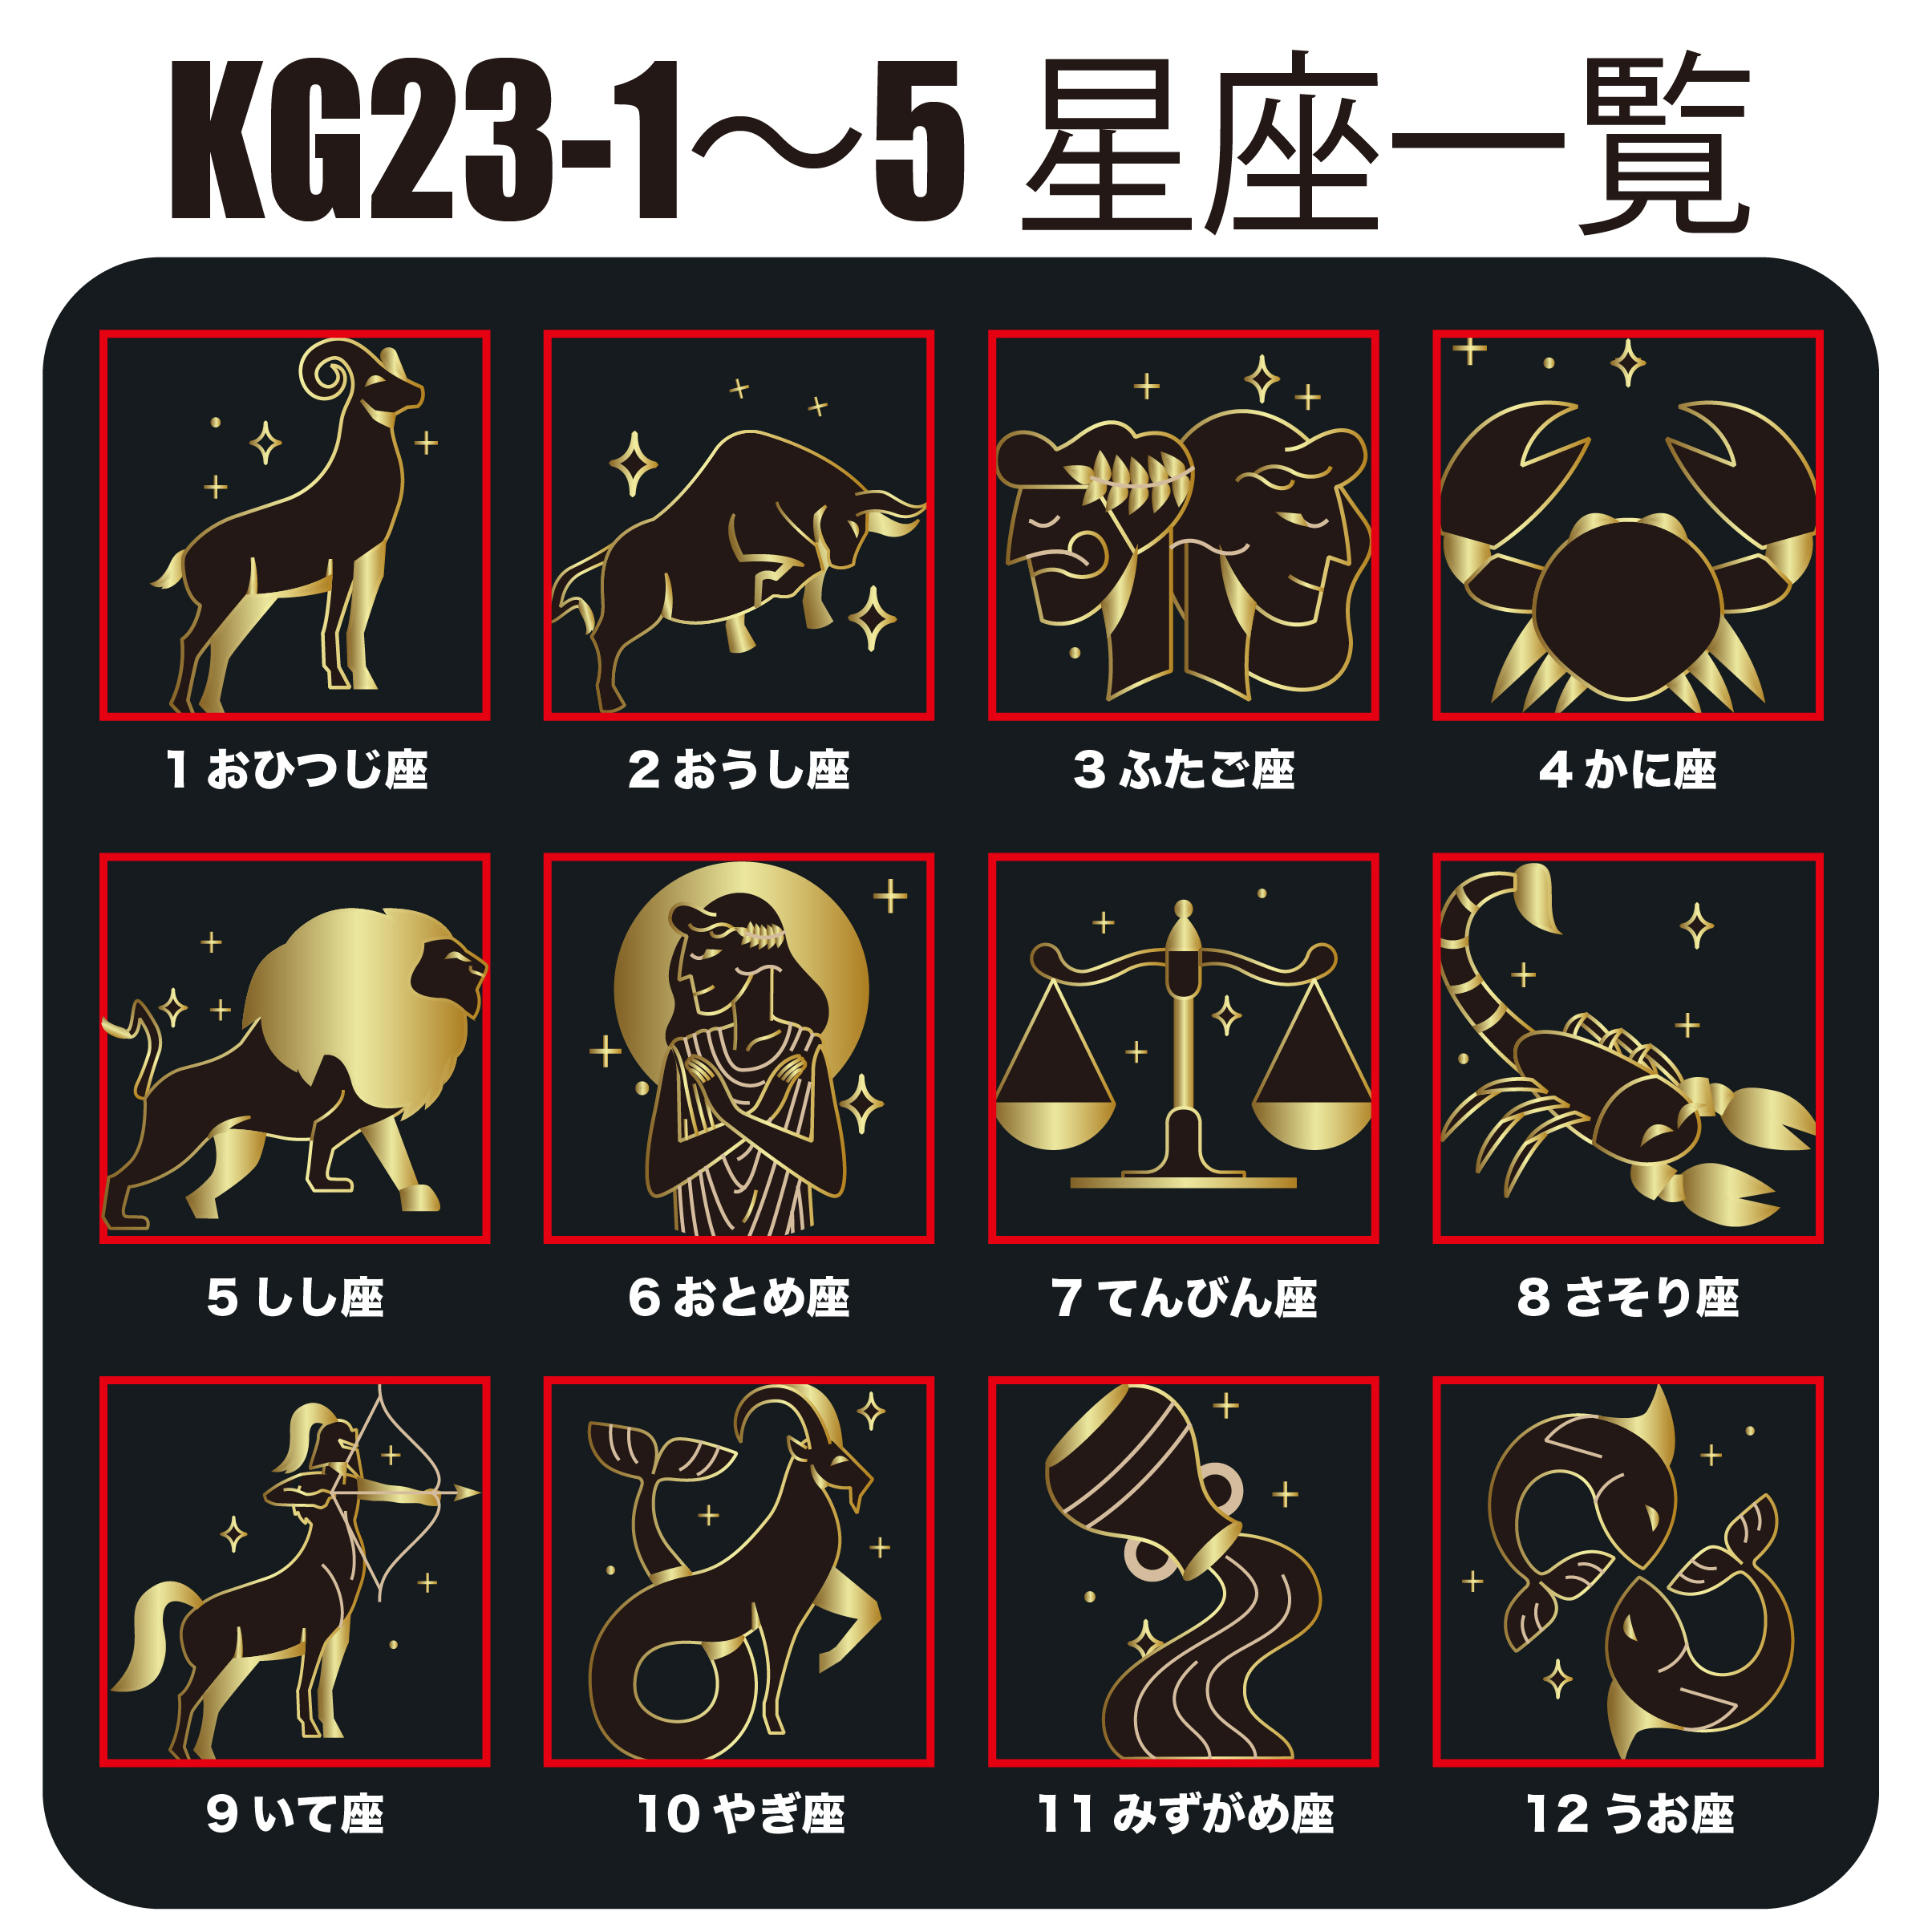 KEGEL KG23-3(受注生産)